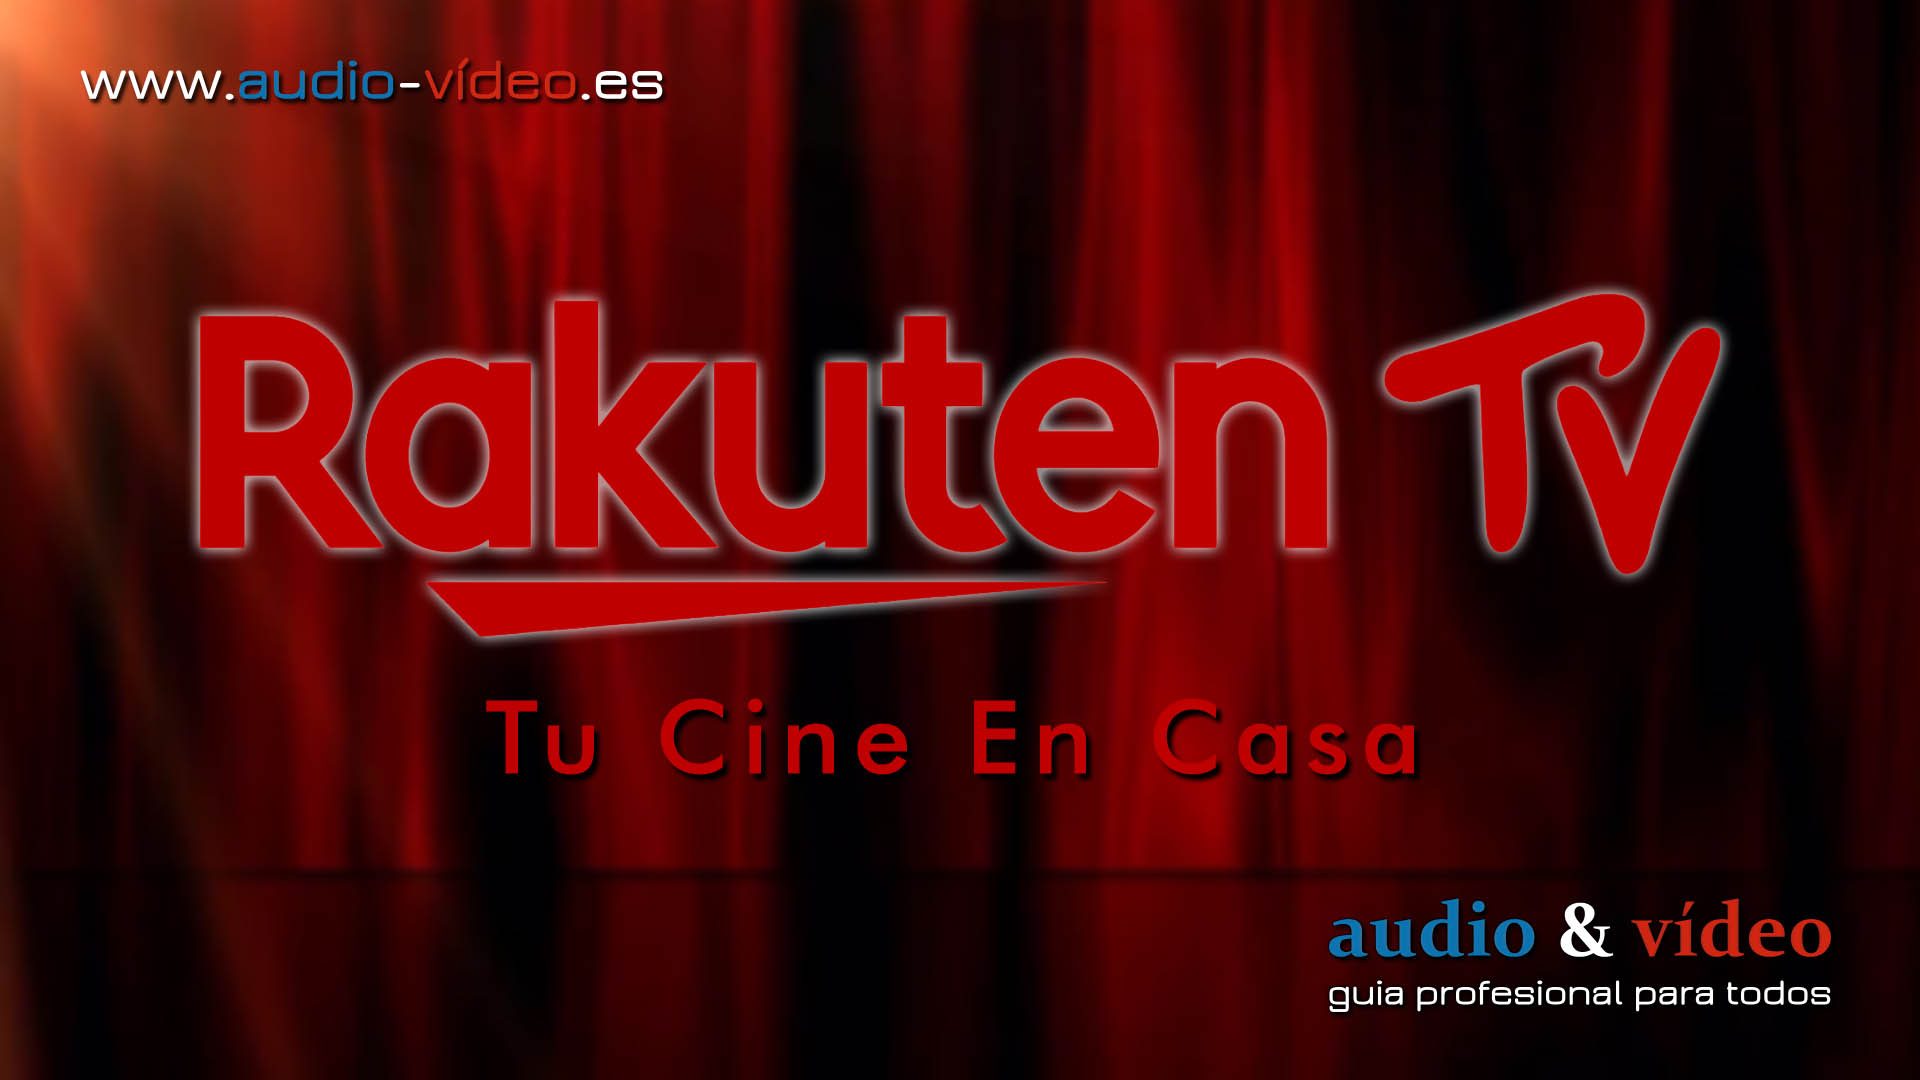 Rakuten TV se une al programa #QuédateEnCasa y ofrece películas en forma gratuita.